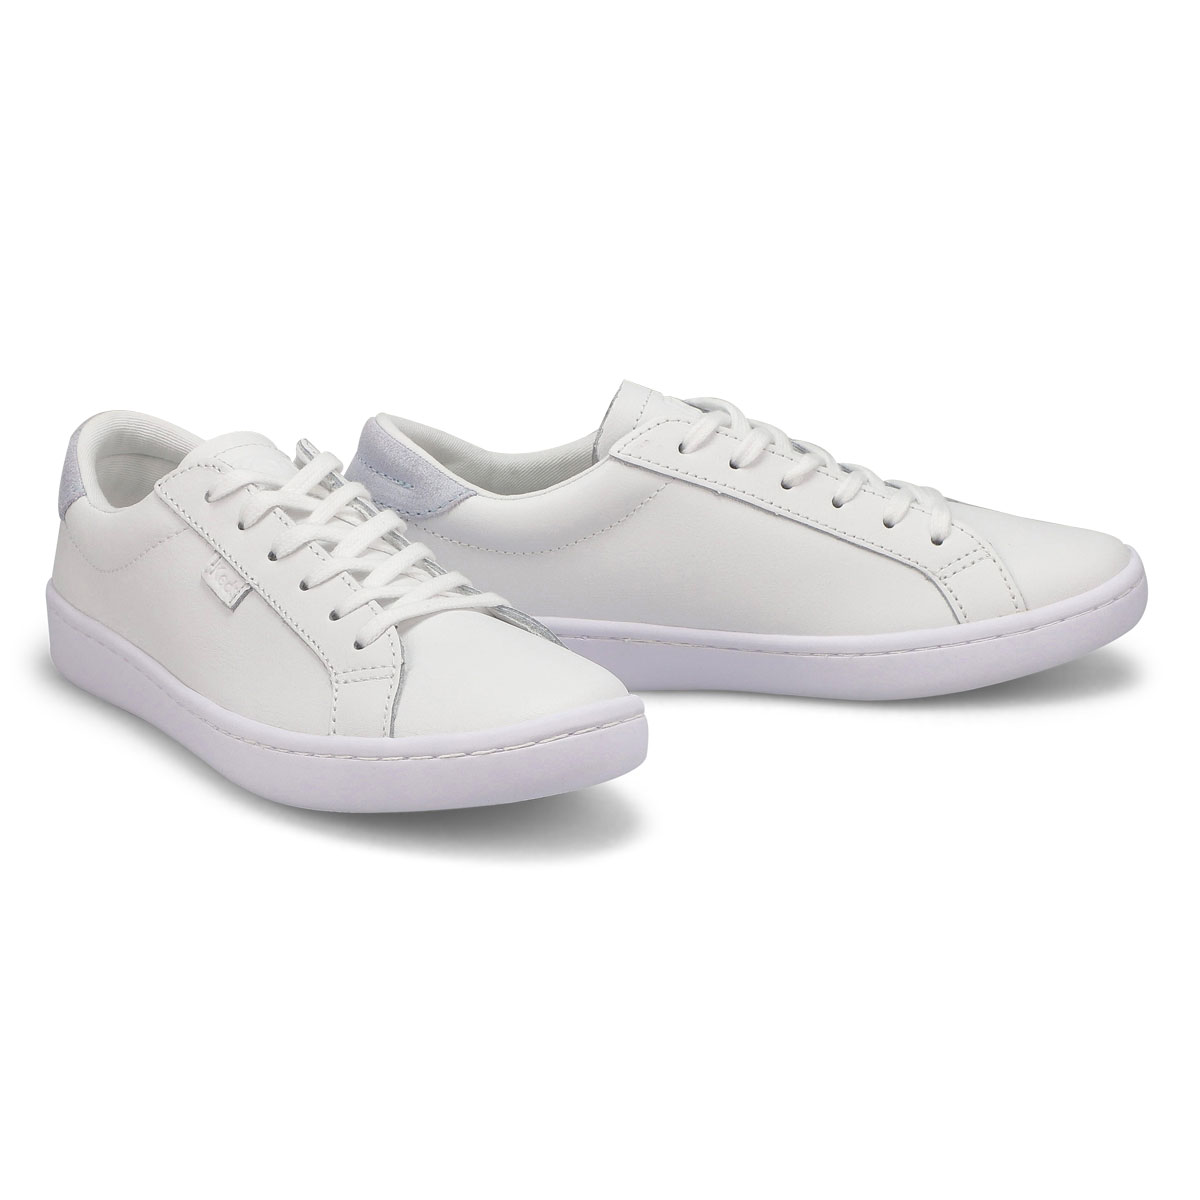 Women's Ace Leather Sneaker - White/Light Bllue